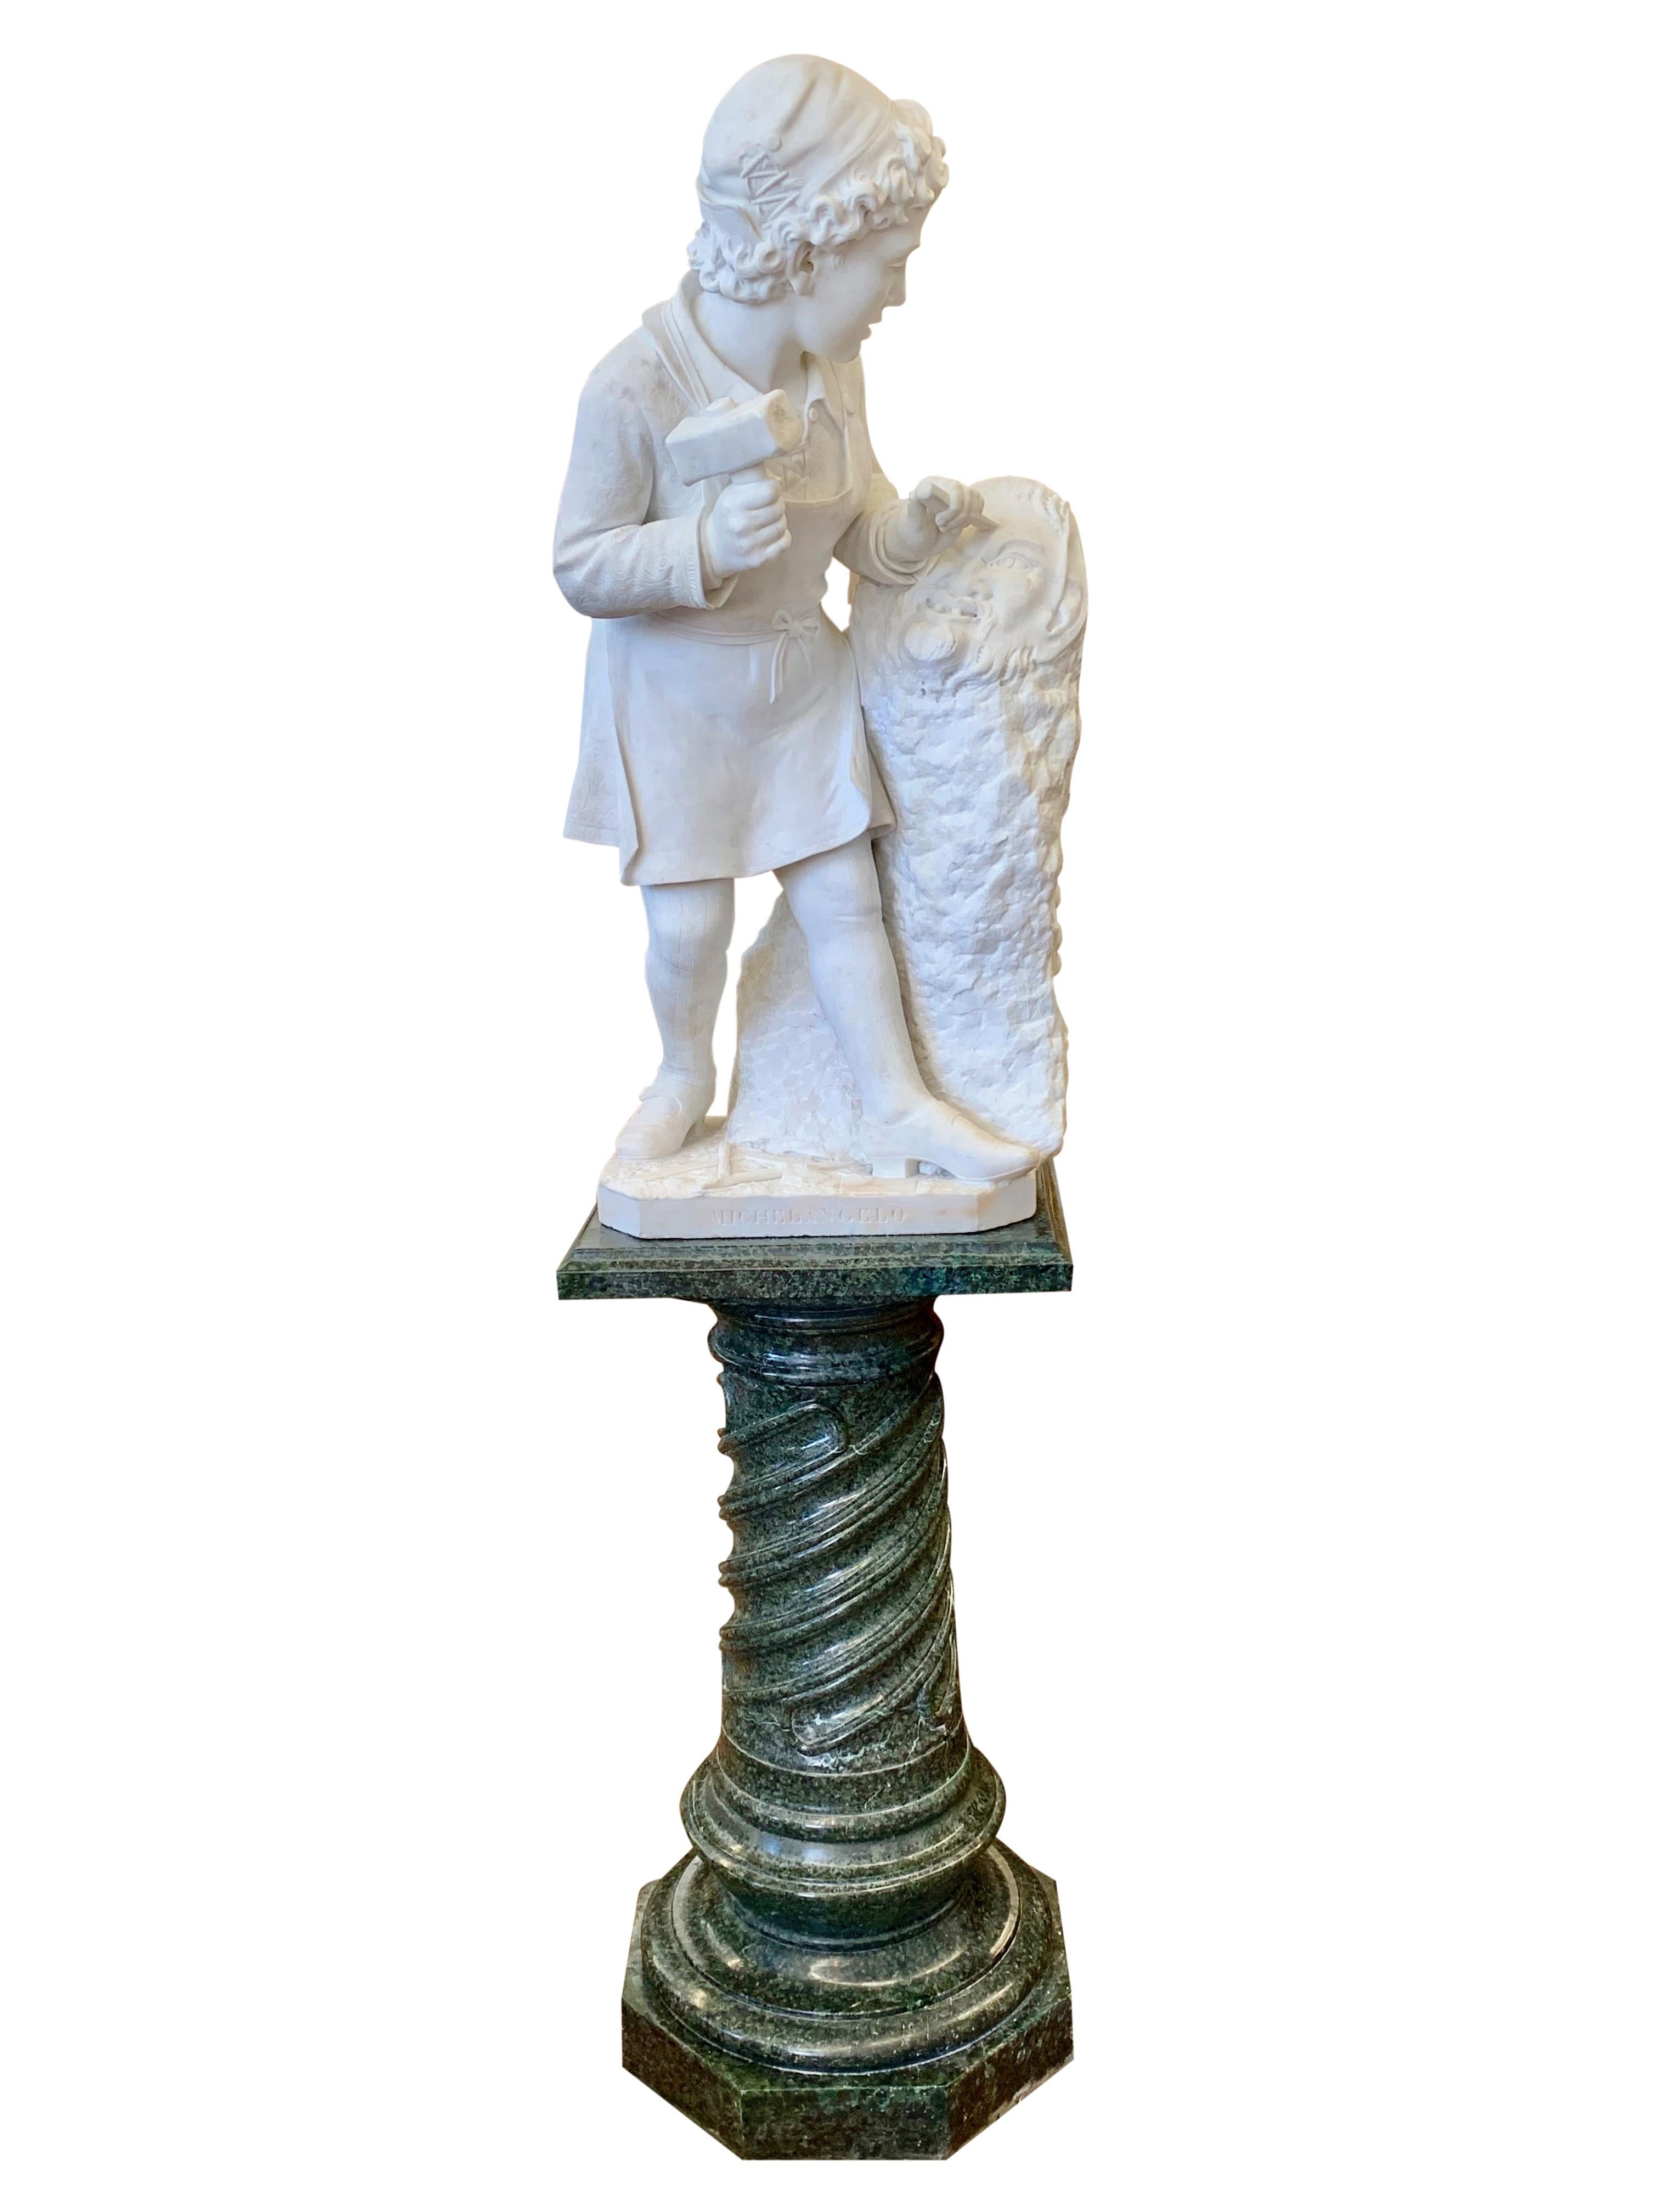 Le jeune Michel-Ange 
Marbre de Carrare.
Signé : P. Bazzanti, Florence (Italien, 1825-1895)
Circa 1870

Cette magnifique sculpture en marbre du XIXe siècle, sculptée à la main, représente le jeune artiste sculptant sa première œuvre connue, une tête